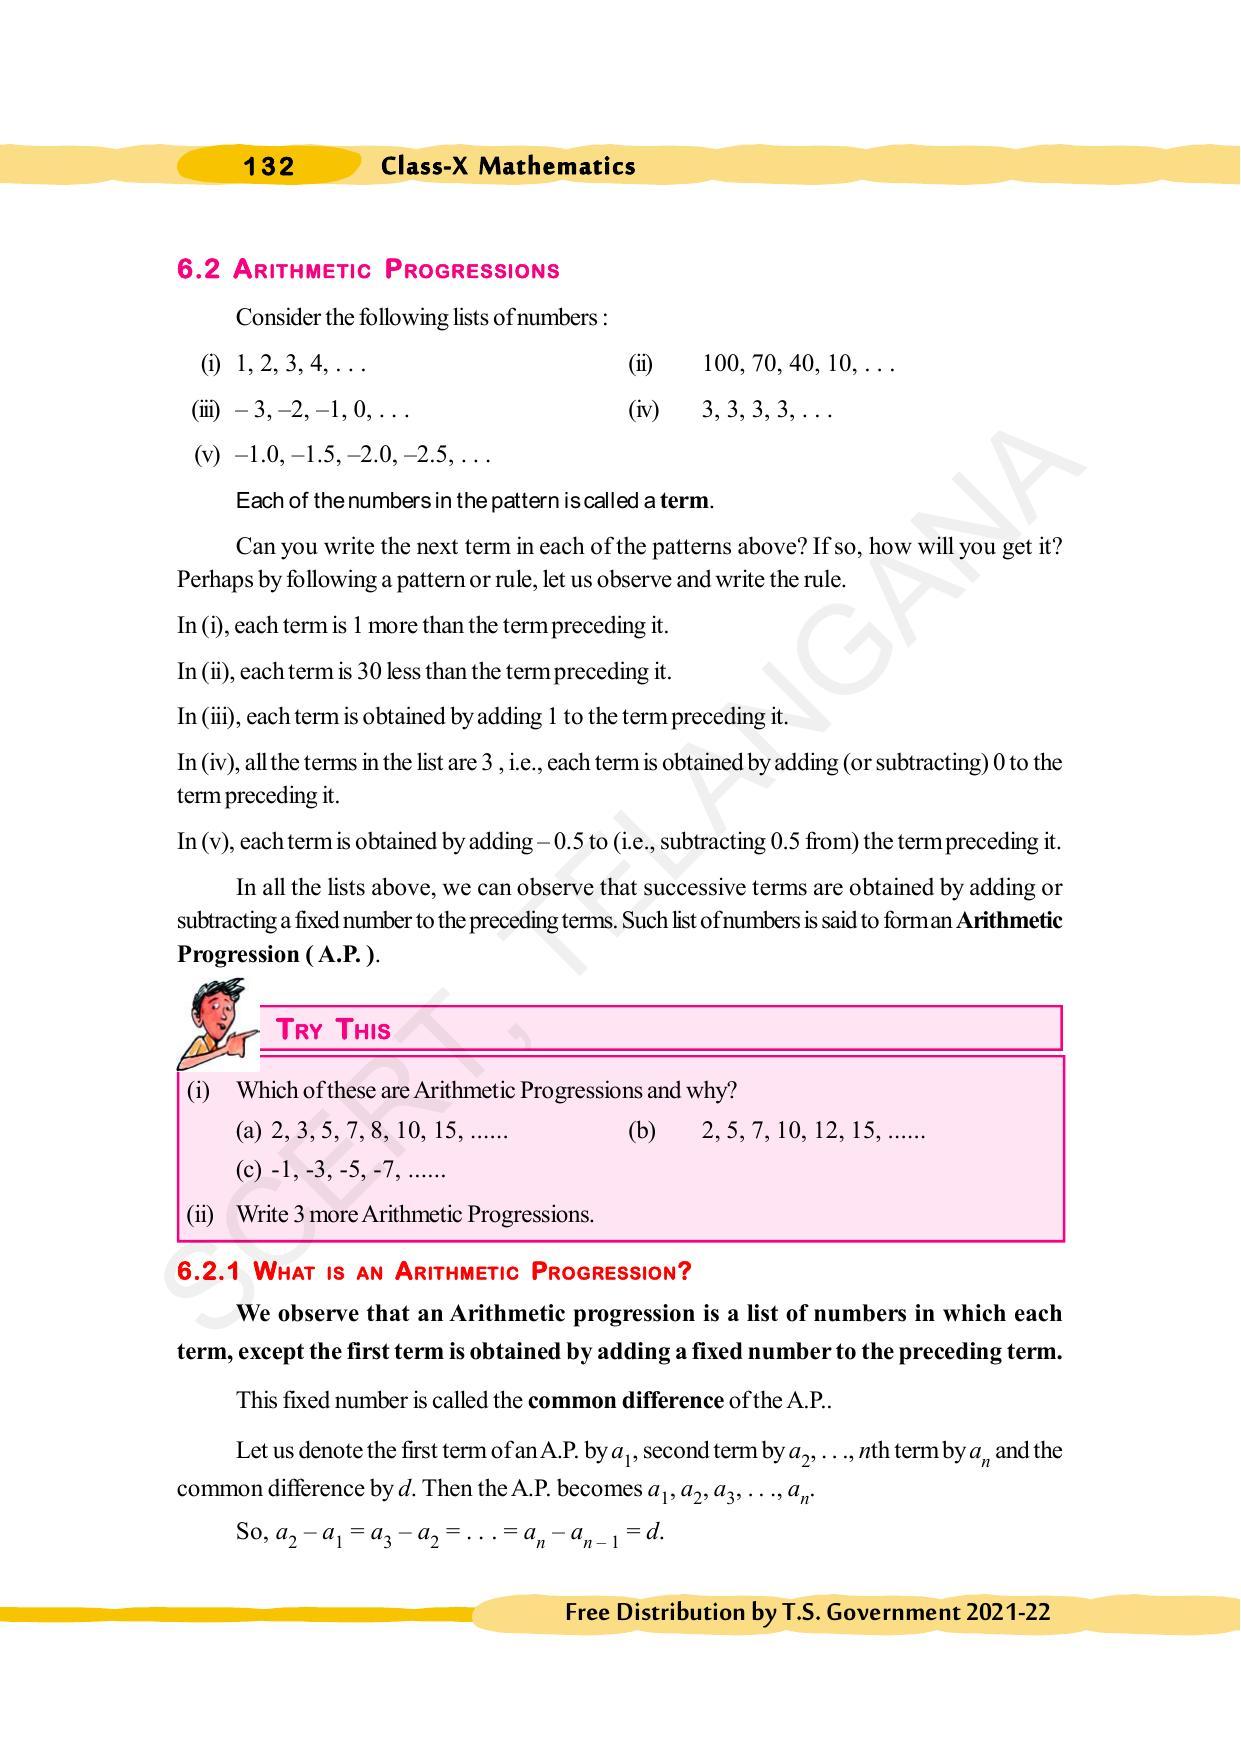 TS SCERT Class 10 Maths (English Medium) Text Book - Page 142